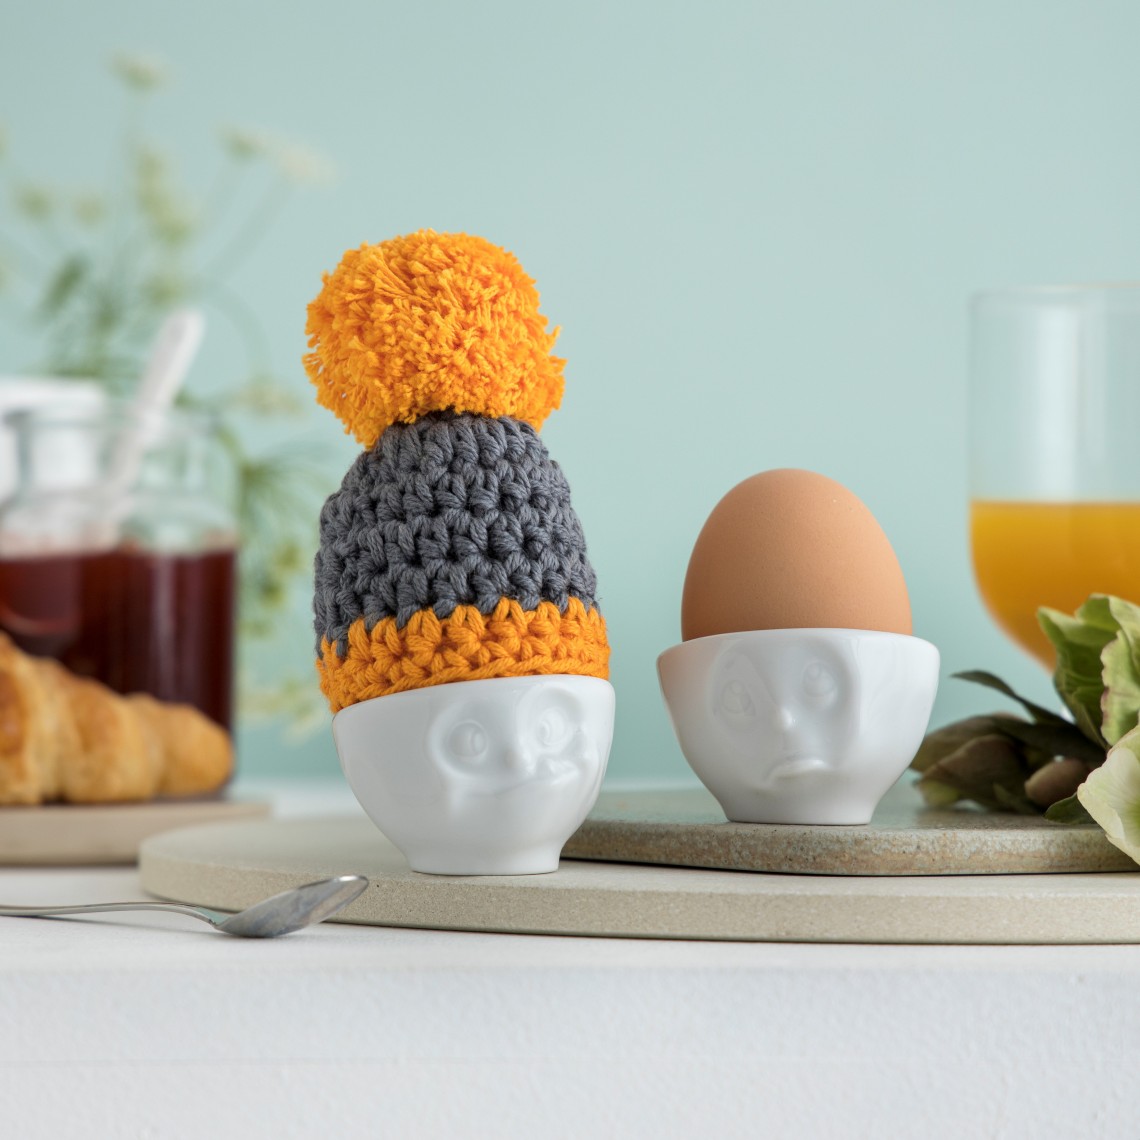 Kiaušinio indo kepurė Pilkai/Geltona. Pagaminta rankomis iš myboshi - vilnos, Vokietijoje. Kaina 5,90€.